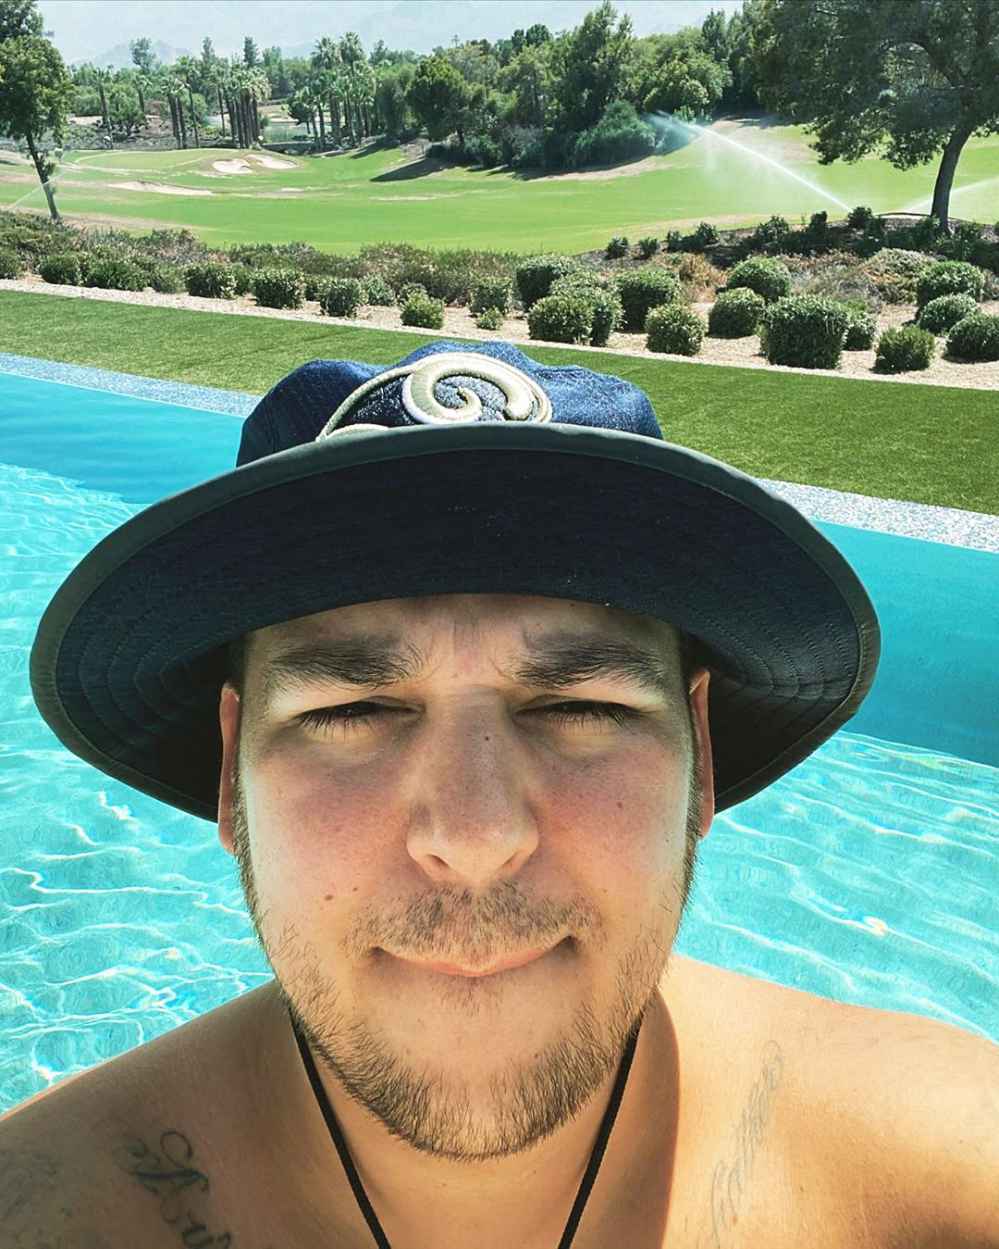 Rob Kardashian Poses Shirtless in New Poolside Selfie